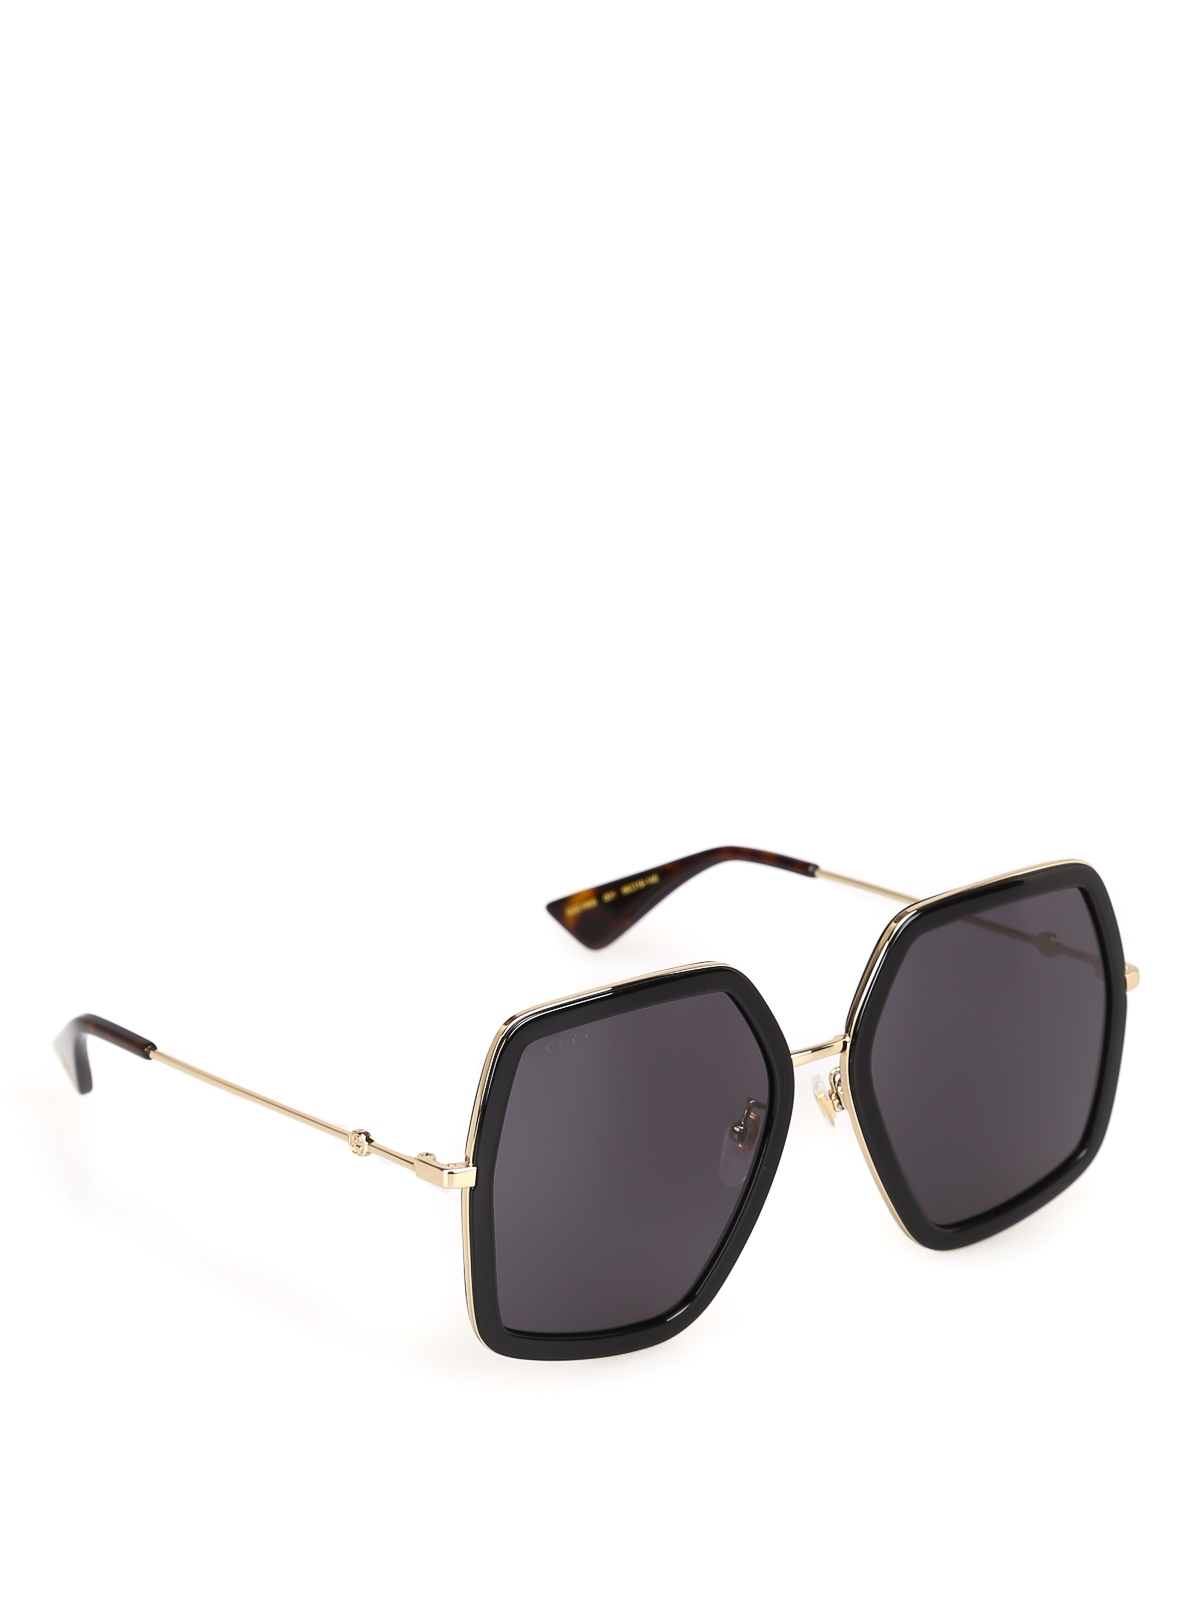 gucci sunglasses black gold